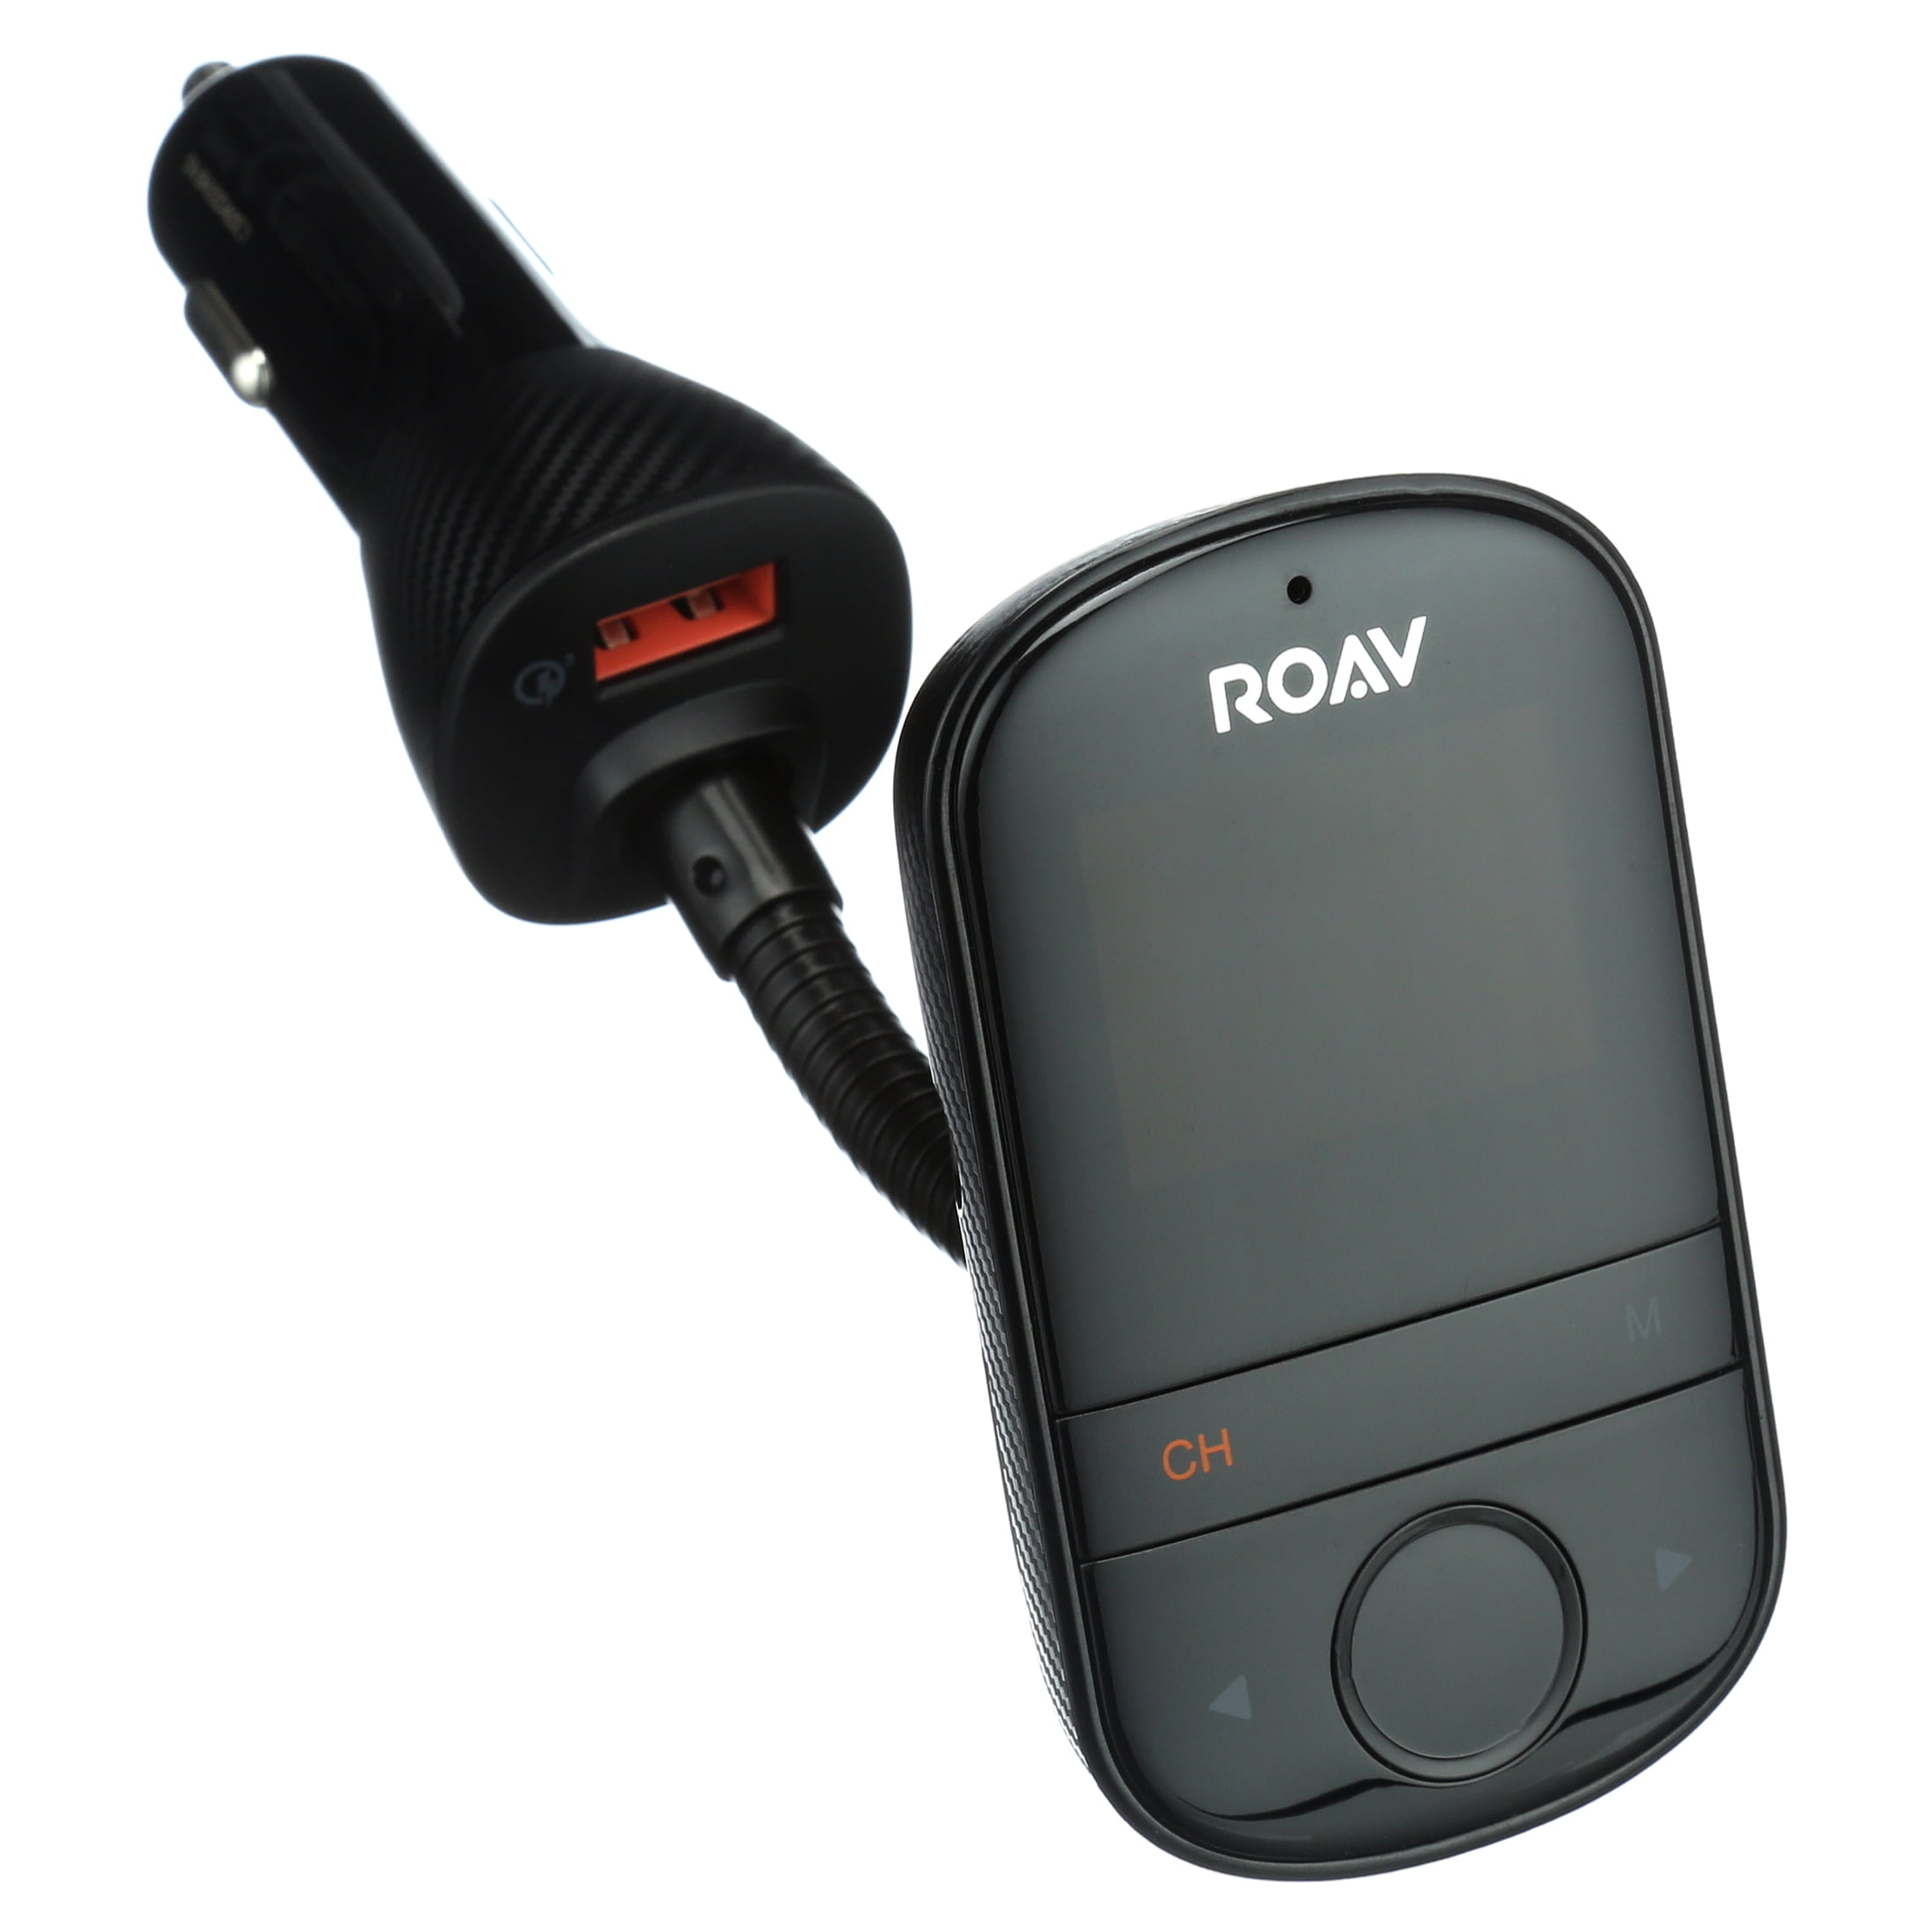 Anker ROAV SmartCharge F2 FM Transmitter Black R5111J11 - Best Buy